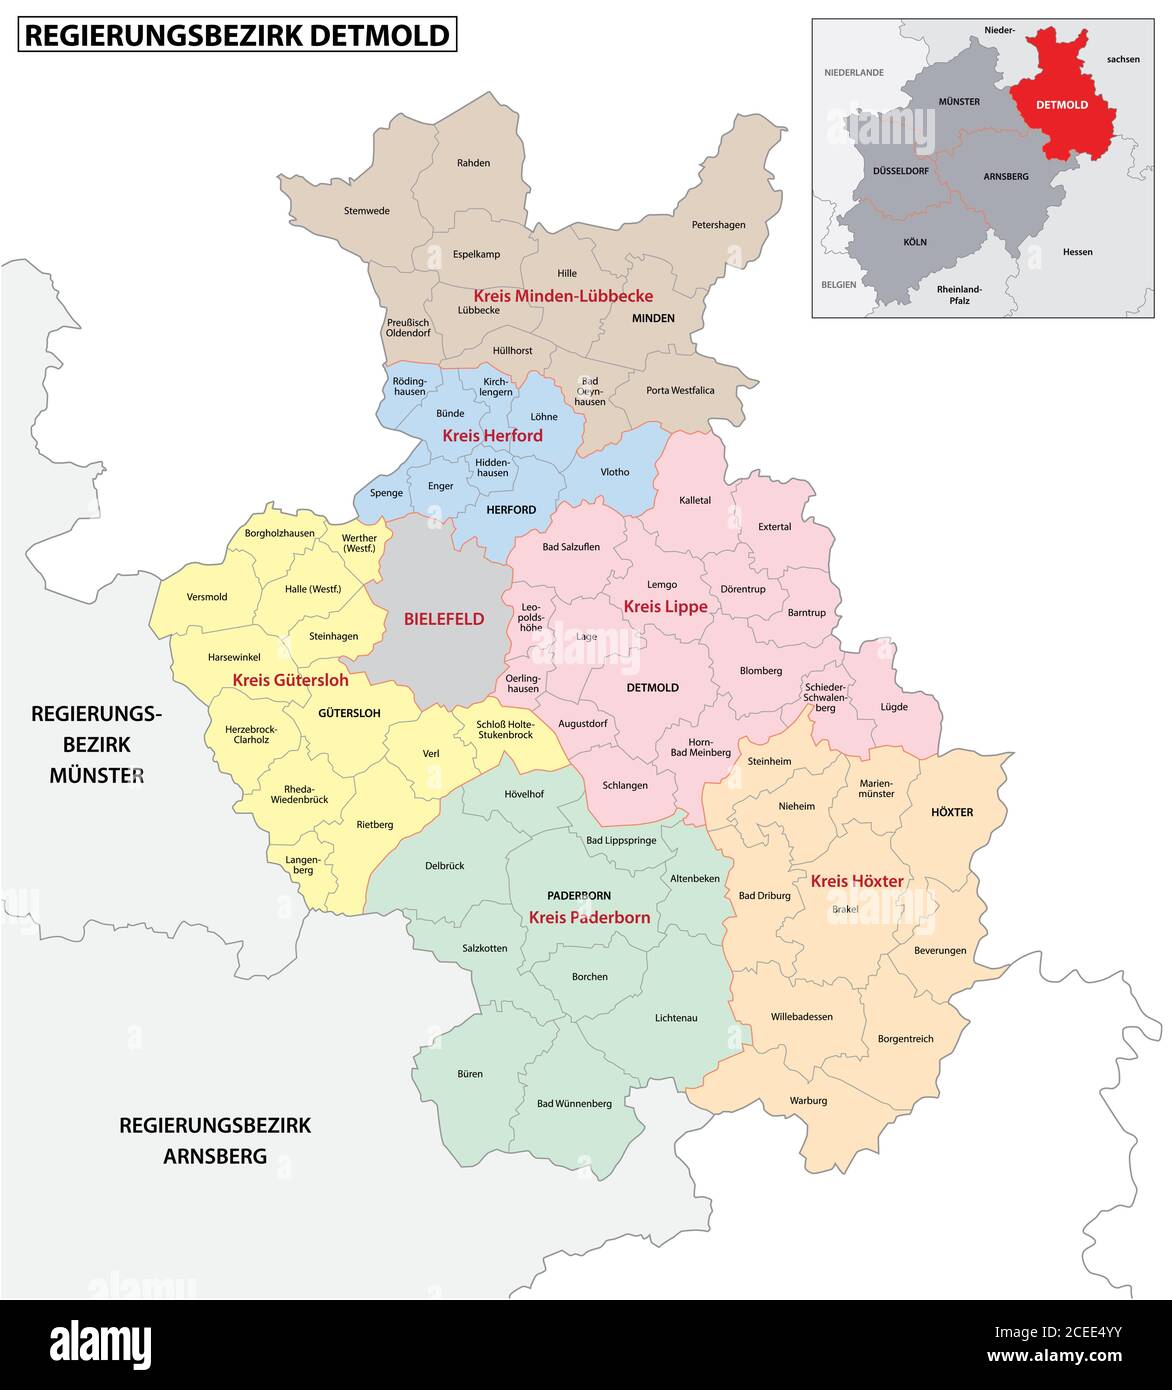 Administrative Vektorkarte der Region Detmold in deutscher Sprache, Nordrhein-Westfalen, Deutschland Stock Vektor